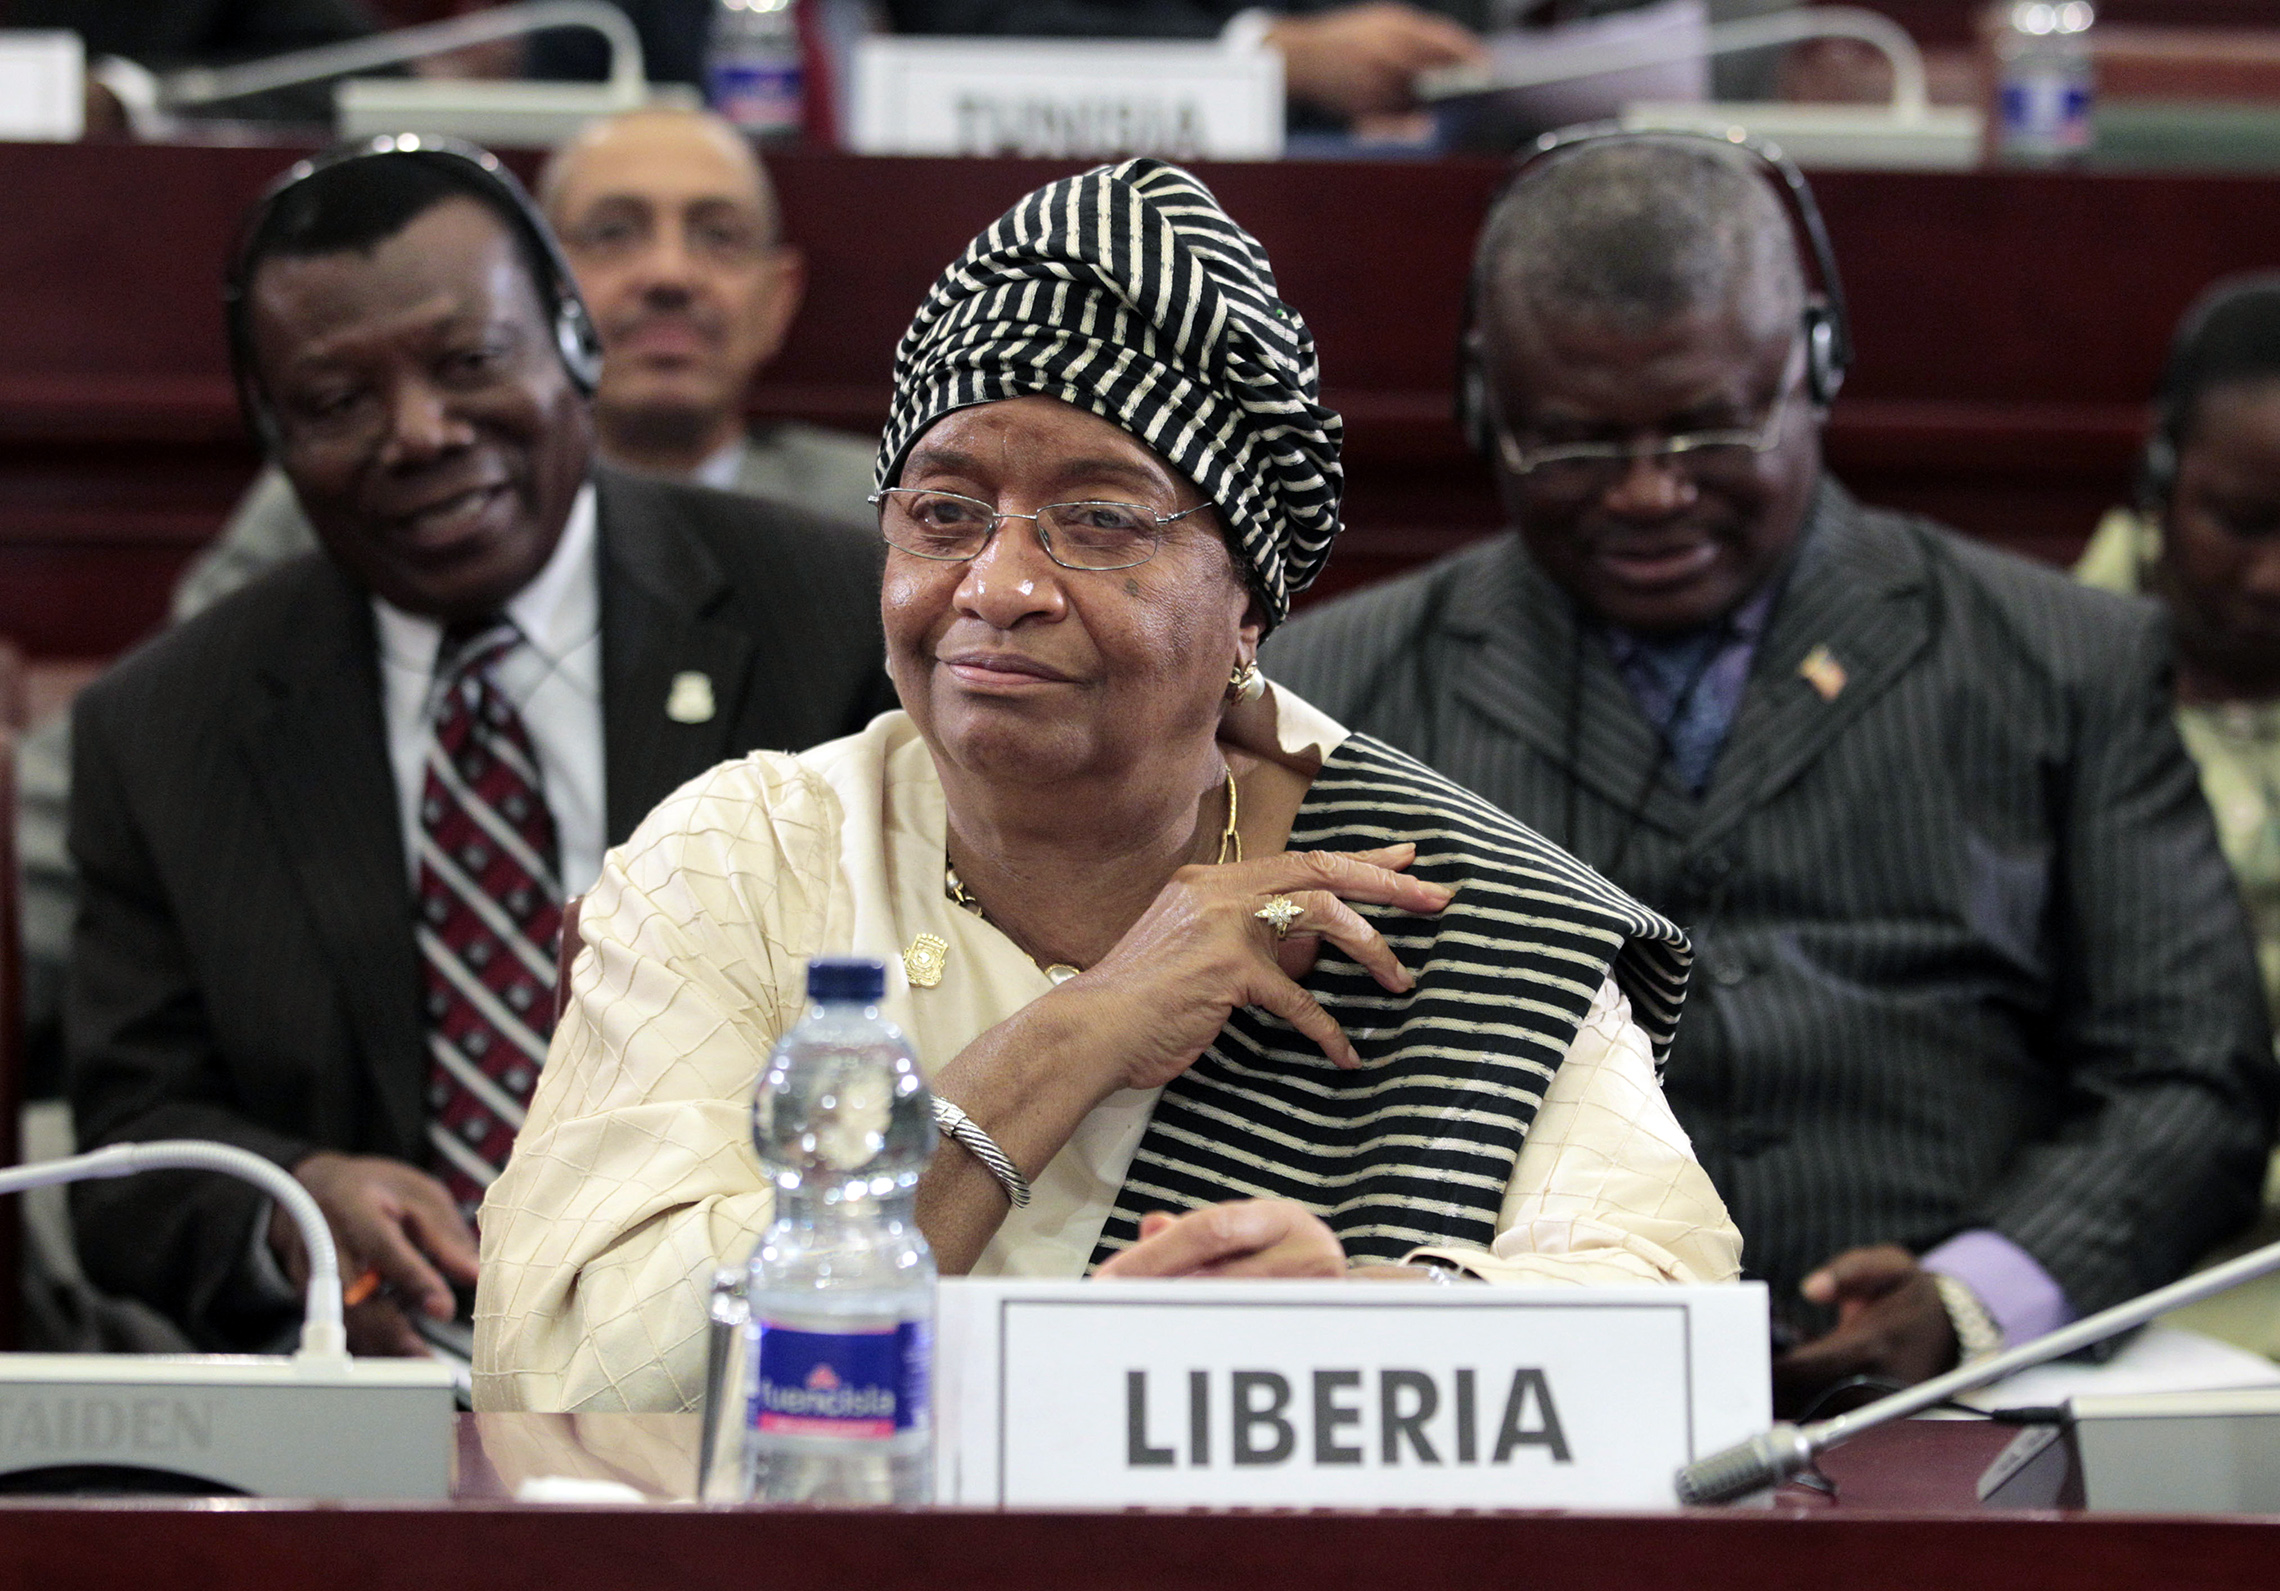 La Présidente libérienne Ellen Johnson Sirleaf, vue lors de la séance de clôture du 17ème Sommet de l'Union africaine à Malabo, Guinée équatoriale, 2011. La séance de la journée a été dominée par le débat sur les troubles en Libye, où Mouammar Kadhafi s'est accroché de manière précaire au pouvoir face à un soulèvement populaire contre son règne de 42 ans. (AP Images/Rebecca Blackwell)'s session was dominated by debate over the turmoil in Libya, where Moammar Gadhafi clung precariously to power in the face of a popular uprising against his 42-year rule. (AP Images/Rebecca Blackwell)